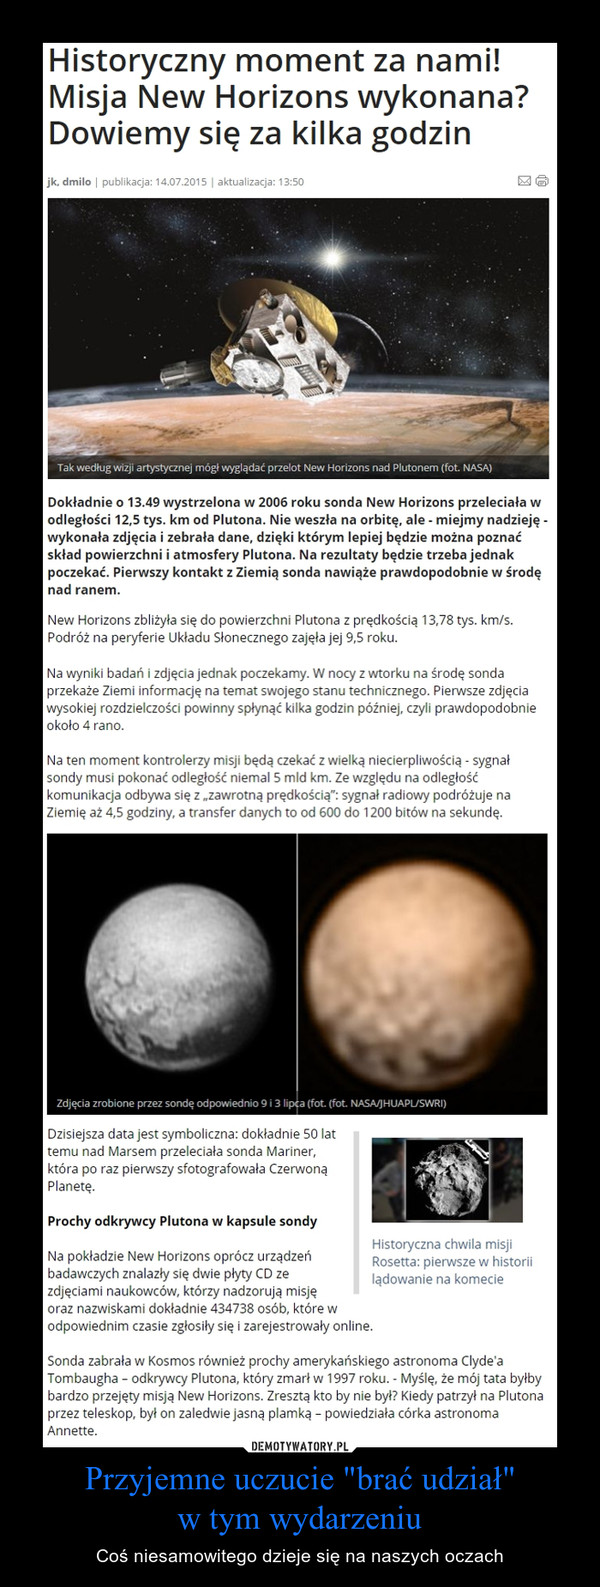 Przyjemne uczucie "brać udział"w tym wydarzeniu – Coś niesamowitego dzieje się na naszych oczach Historyczny moment za nami! Misja New Horizons wykonana? Dowiemy się za kilka godzinDokładnie o 13.49 wystrzelona w 2006 roku sonda New Horizons przeleciała w odległości 12,5 tys. km od Plutona. Nie weszła na orbitę, ale - miejmy nadzieję - wykonała zdjęcia i zebrała dane, dzięki którym lepiej będzie można poznać skład powierzchni i atmosfery Plutona. Na rezultaty będzie trzeba jednak poczekać. Pierwszy kontakt z Ziemią sonda nawiąże prawdopodobnie w środę nad ranem.New Horizons zbliżyła się do powierzchni Plutona z prędkością 13,78 tys. km/s. Podróż na peryferie Układu Słonecznego zajęła jej 9,5 roku. Na wyniki badań i zdjęcia jednak poczekamy. W nocy z wtorku na środę sonda przekaże Ziemi informację na temat swojego stanu technicznego. Pierwsze zdjęcia wysokiej rozdzielczości powinny spłynąć kilka godzin później, czyli prawdopodobnie około 4 rano. Na ten moment kontrolerzy misji będą czekać z wielką niecierpliwością - sygnał sondy musi pokonać odległość niemal 5 mld km. Ze względu na odległość komunikacja odbywa się z „zawrotną prędkością”: sygnał radiowy podróżuje na Ziemię aż 4,5 godziny, a transfer danych to od 600 do 1200 bitów na sekundę.Dzisiejsza data jest symboliczna: dokładnie 50 lat temu nad Marsem przeleciała sonda Mariner, która po raz pierwszy sfotografowała Czerwoną Planetę. Prochy odkrywcy Plutona w kapsule sondyNa pokładzie New Horizons oprócz urządzeń badawczych znalazły się dwie płyty CD ze zdjęciami naukowców, którzy nadzorują misję oraz nazwiskami dokładnie 434738 osób, które w odpowiednim czasie zgłosiły się i zarejestrowały online. Sonda zabrała w Kosmos również prochy amerykańskiego astronoma Clyde'a Tombaugha – odkrywcy Plutona, który zmarł w 1997 roku. - Myślę, że mój tata byłby bardzo przejęty misją New Horizons. Zresztą kto by nie był? Kiedy patrzył na Plutona przez teleskop, był on zaledwie jasną plamką – powiedziała córka astronoma Annette.